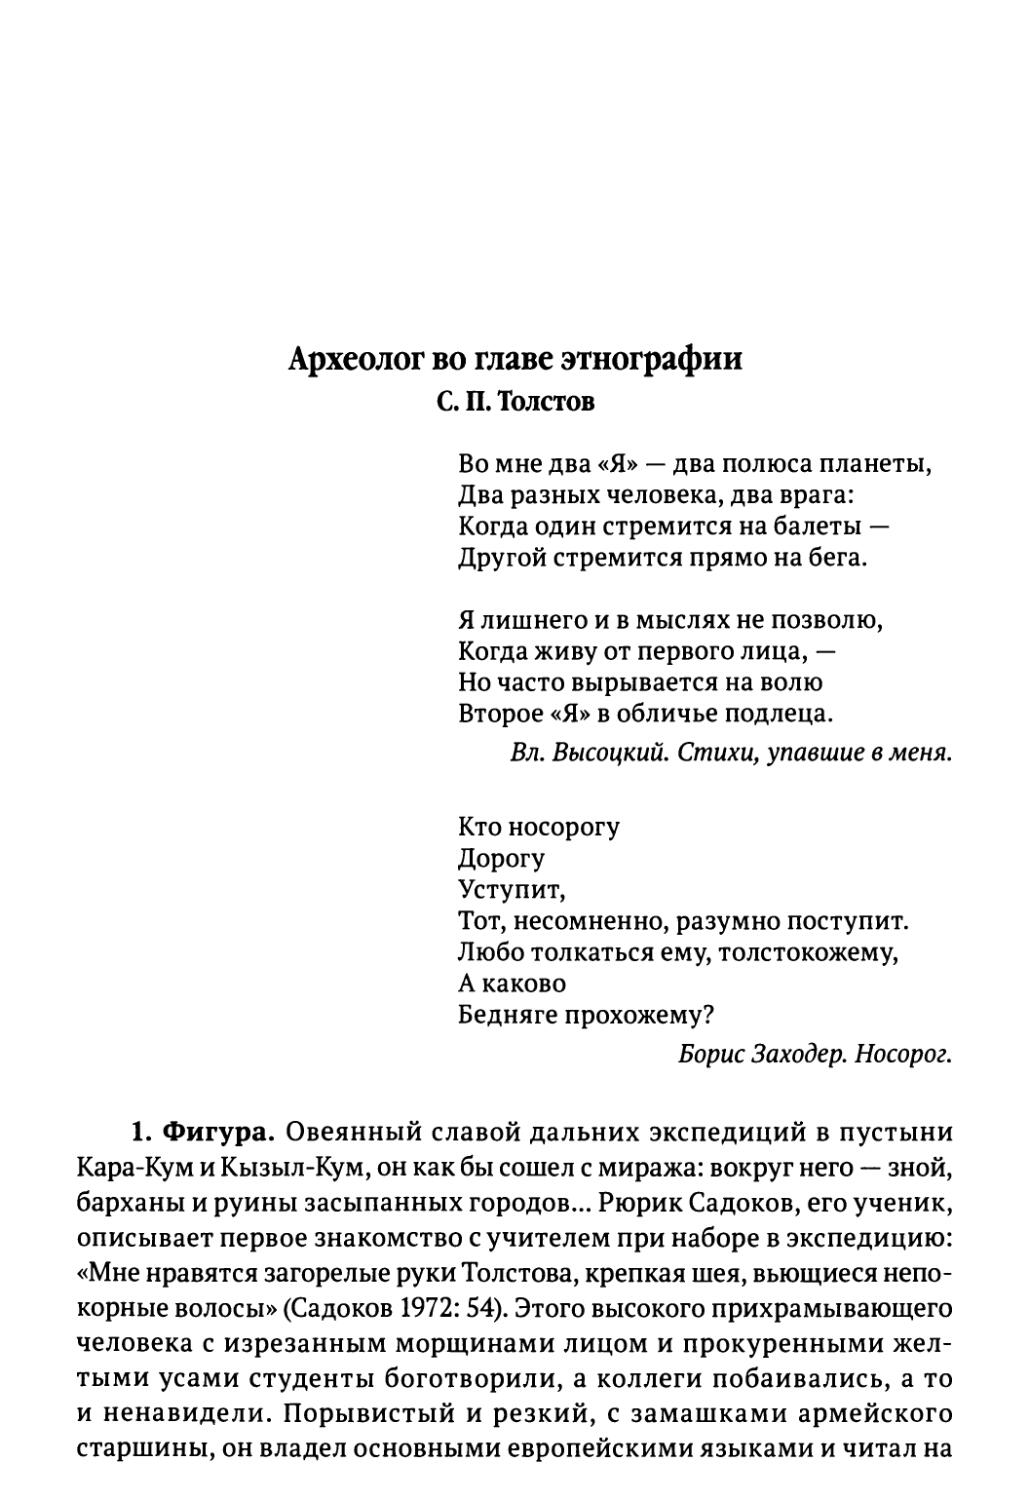 Археолог во главе этнографии. С.П. Толстов